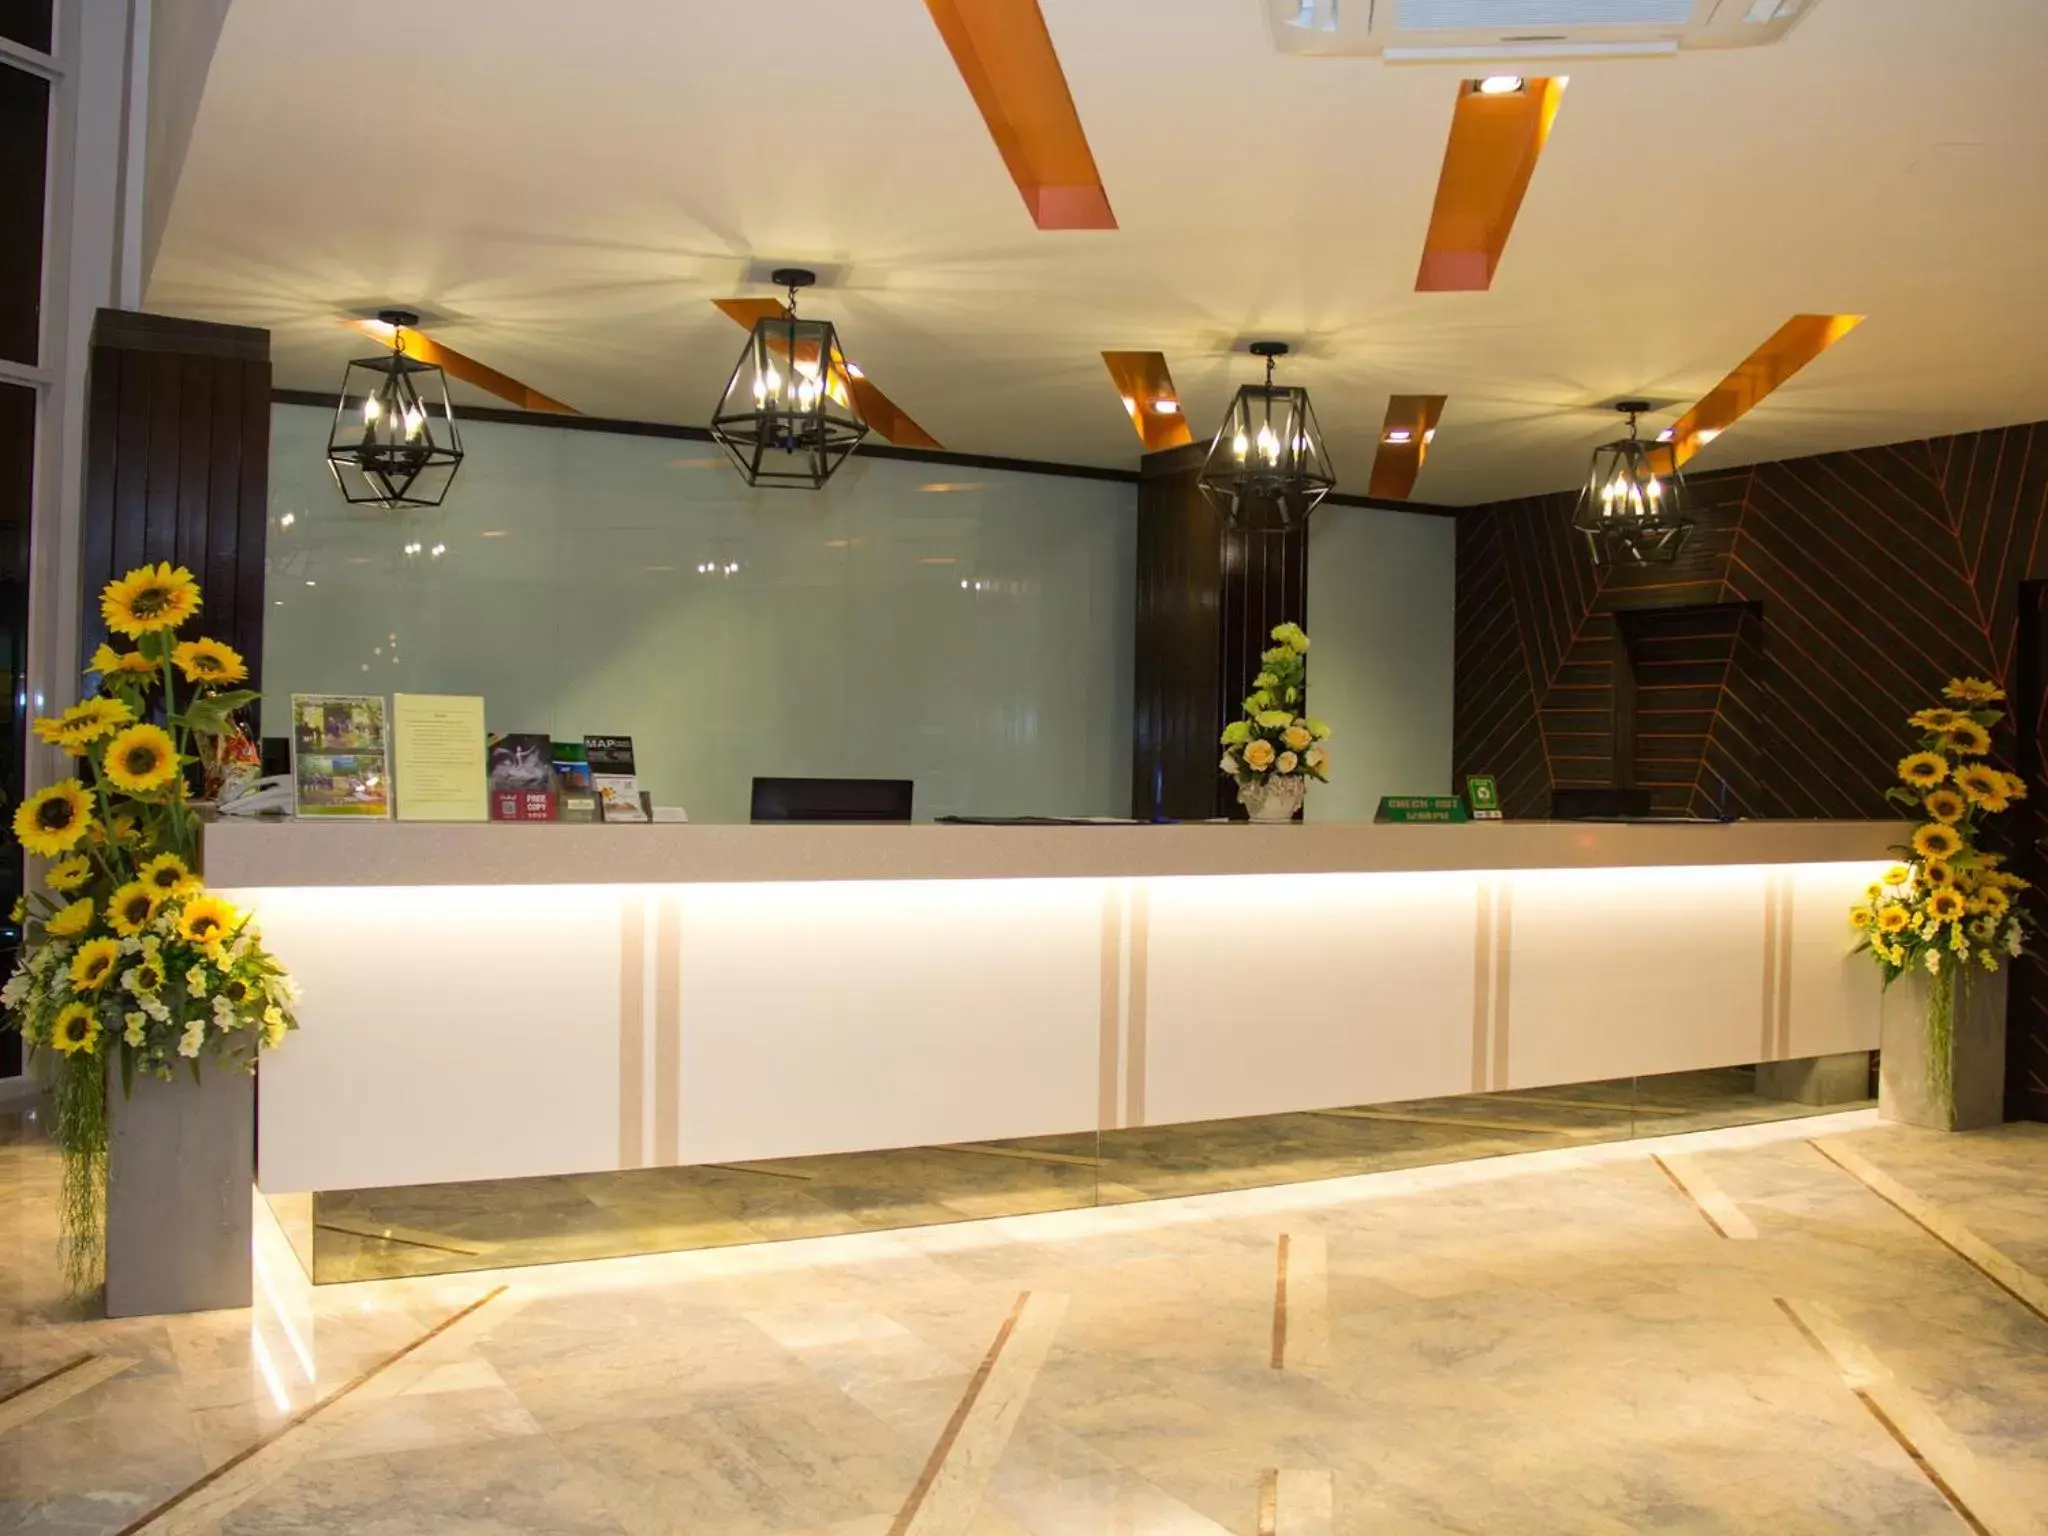 Lobby or reception, Lobby/Reception in Friendlytel Hotel